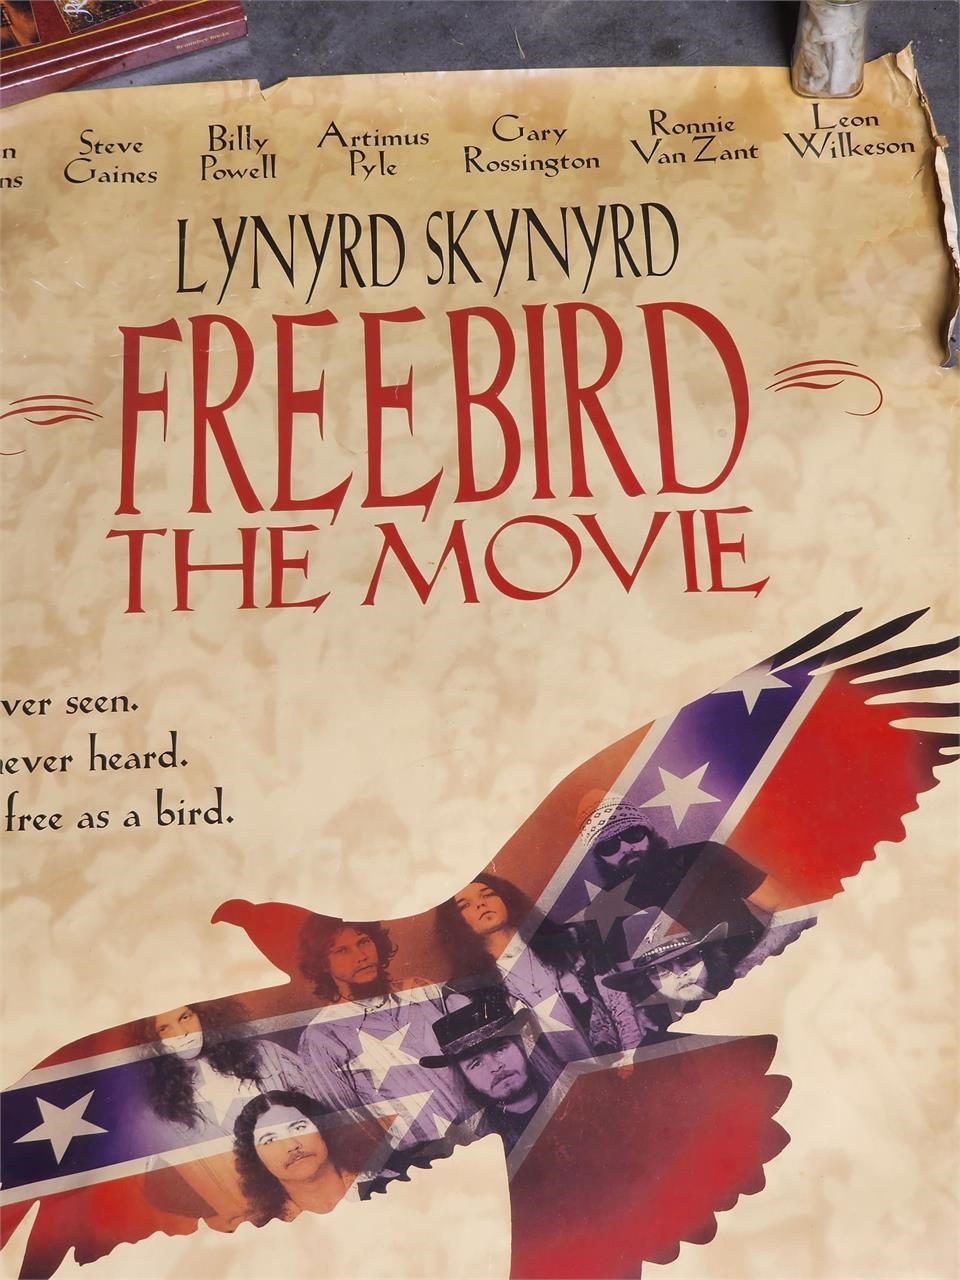 LYNYRD SKYNYRD free bird poster